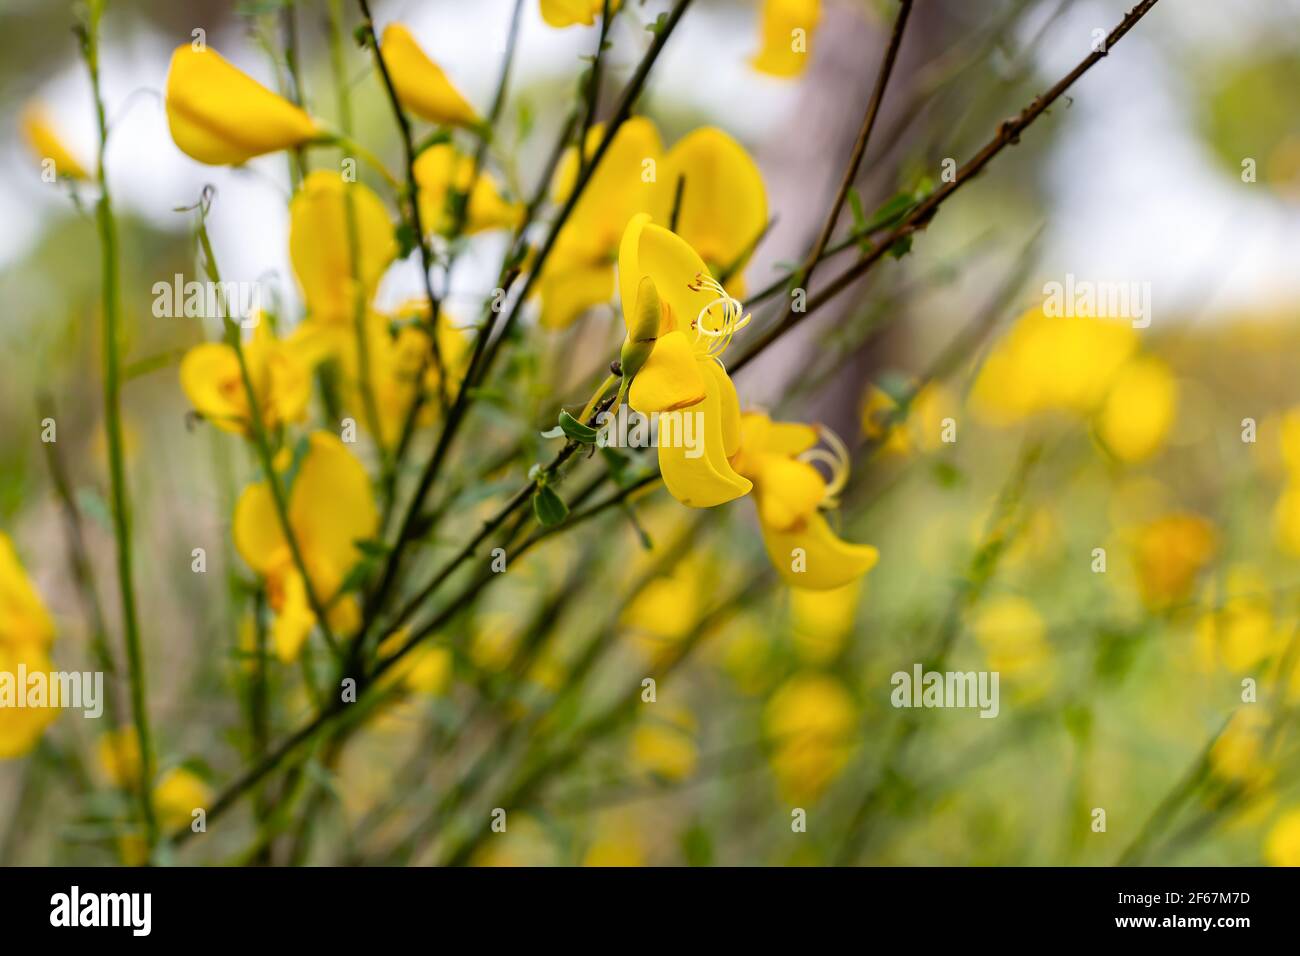 Il retama sphaerocarpa è un genere di cespugli fioriti della famiglia delle legume, Fabaceae con fiori gialli. Appartiene alla tribù delle ginocchie, Genisteae. Foto Stock